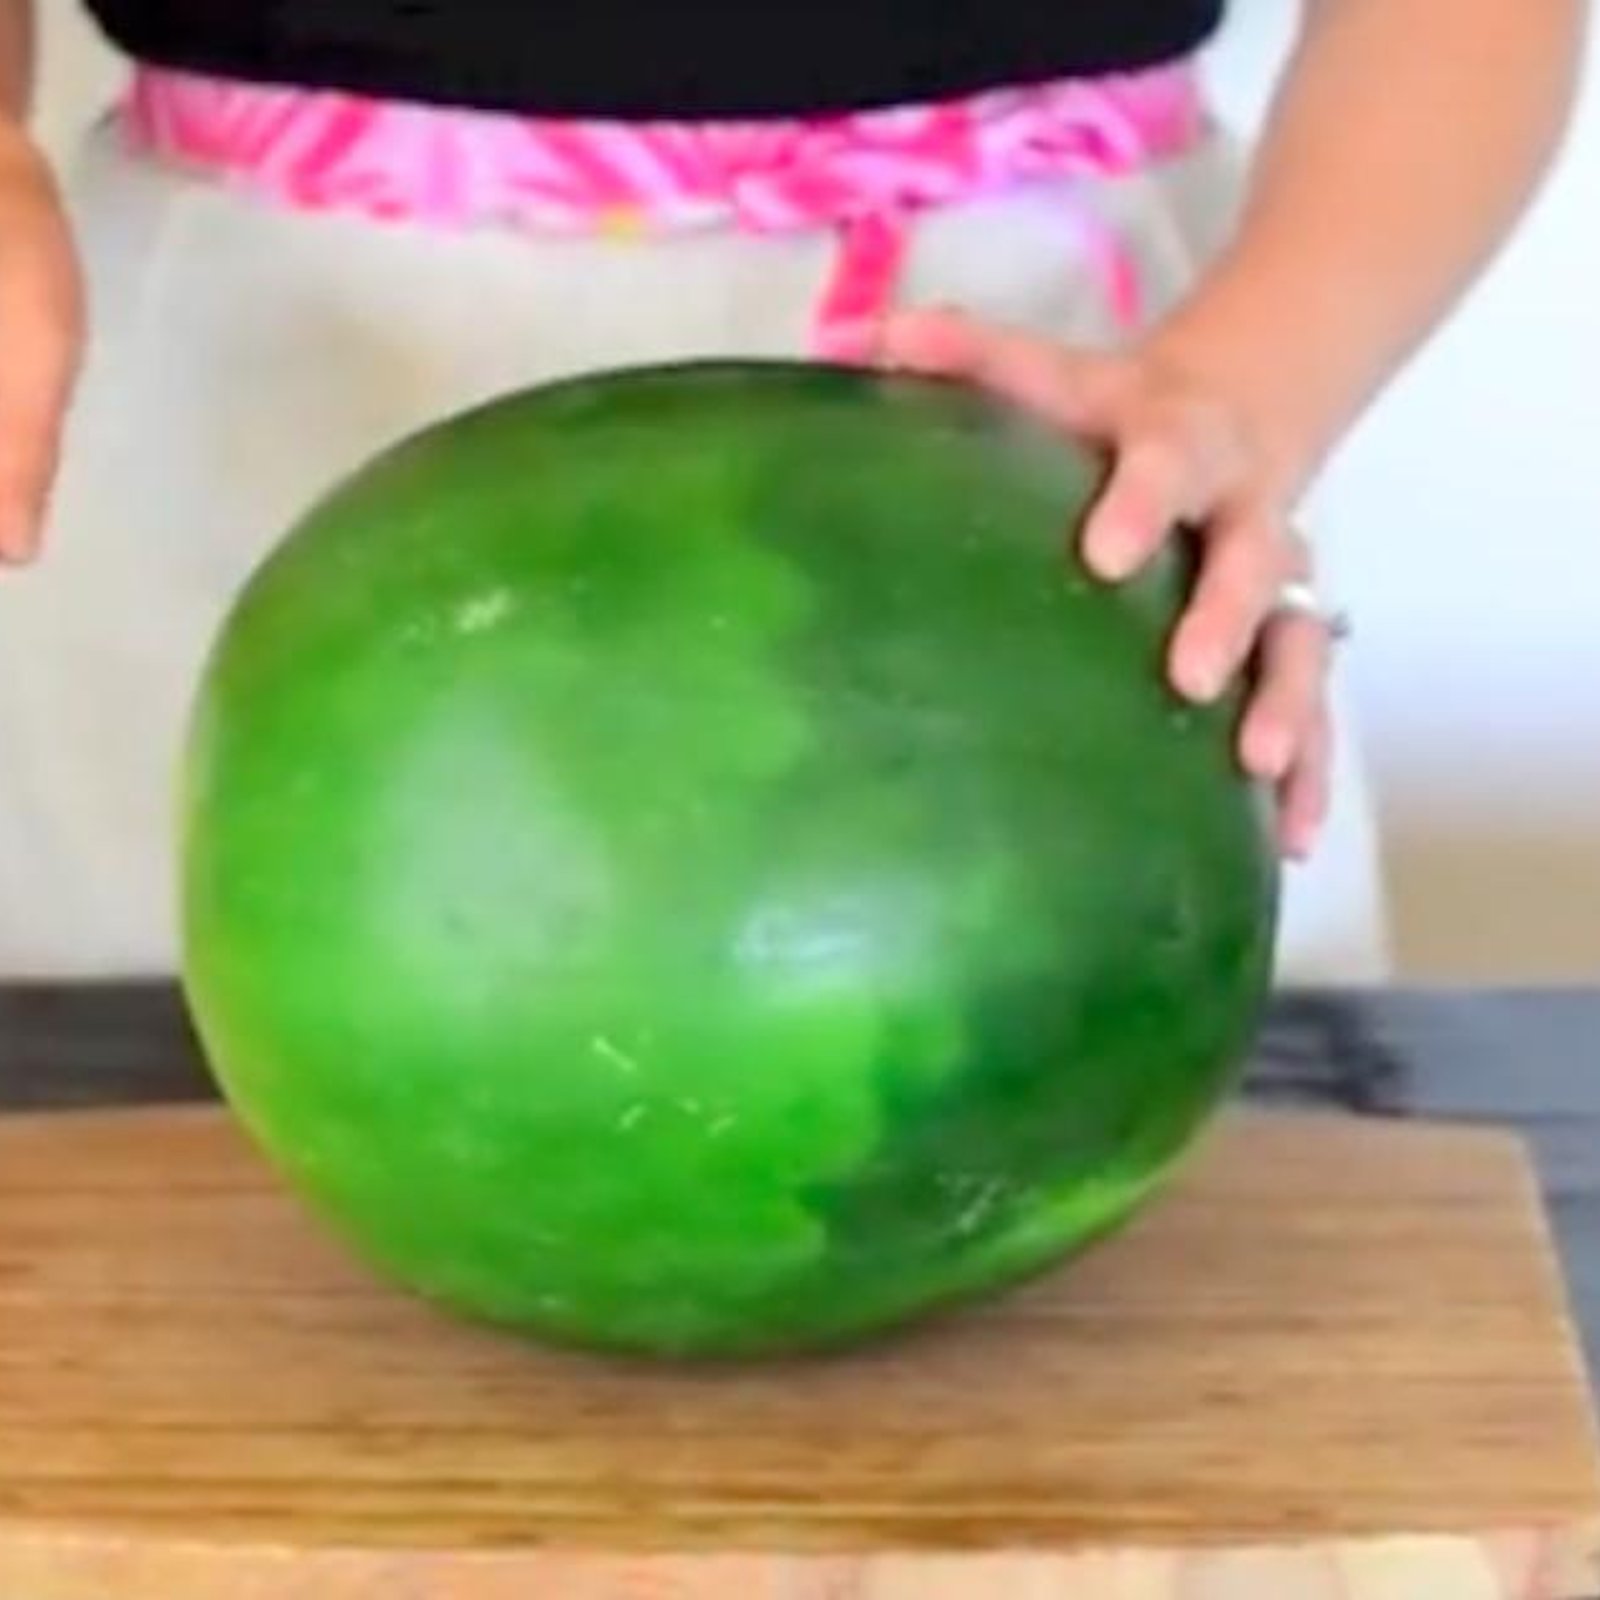 Apprenez à découper un melon d'eau d'une manière efficace